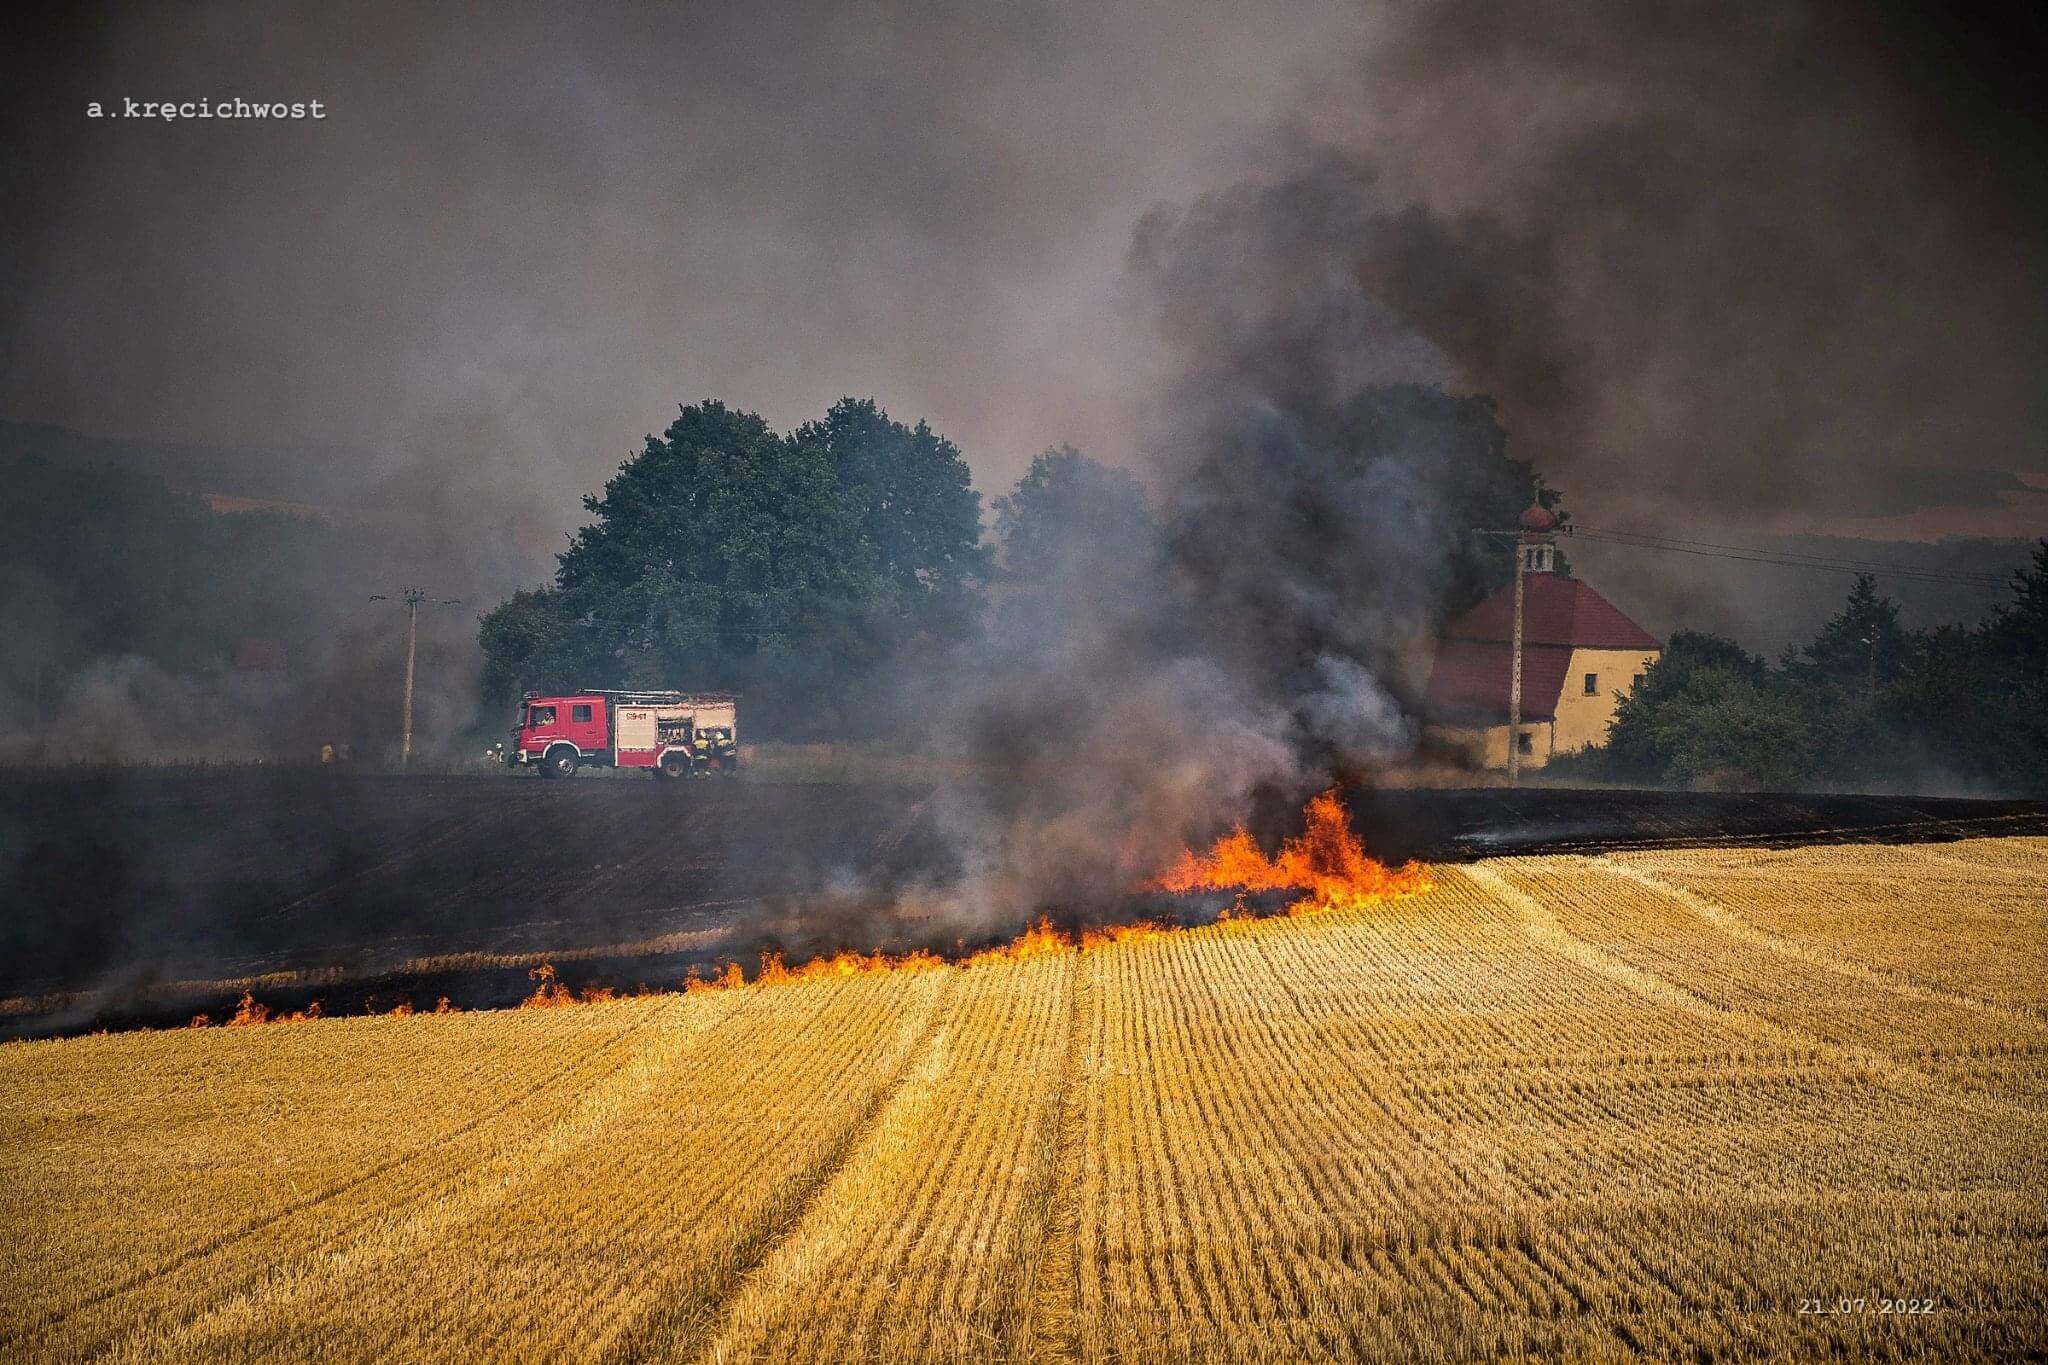  CZAPLE: Pożar ścierniska – ogień przedostał się aż do wsi